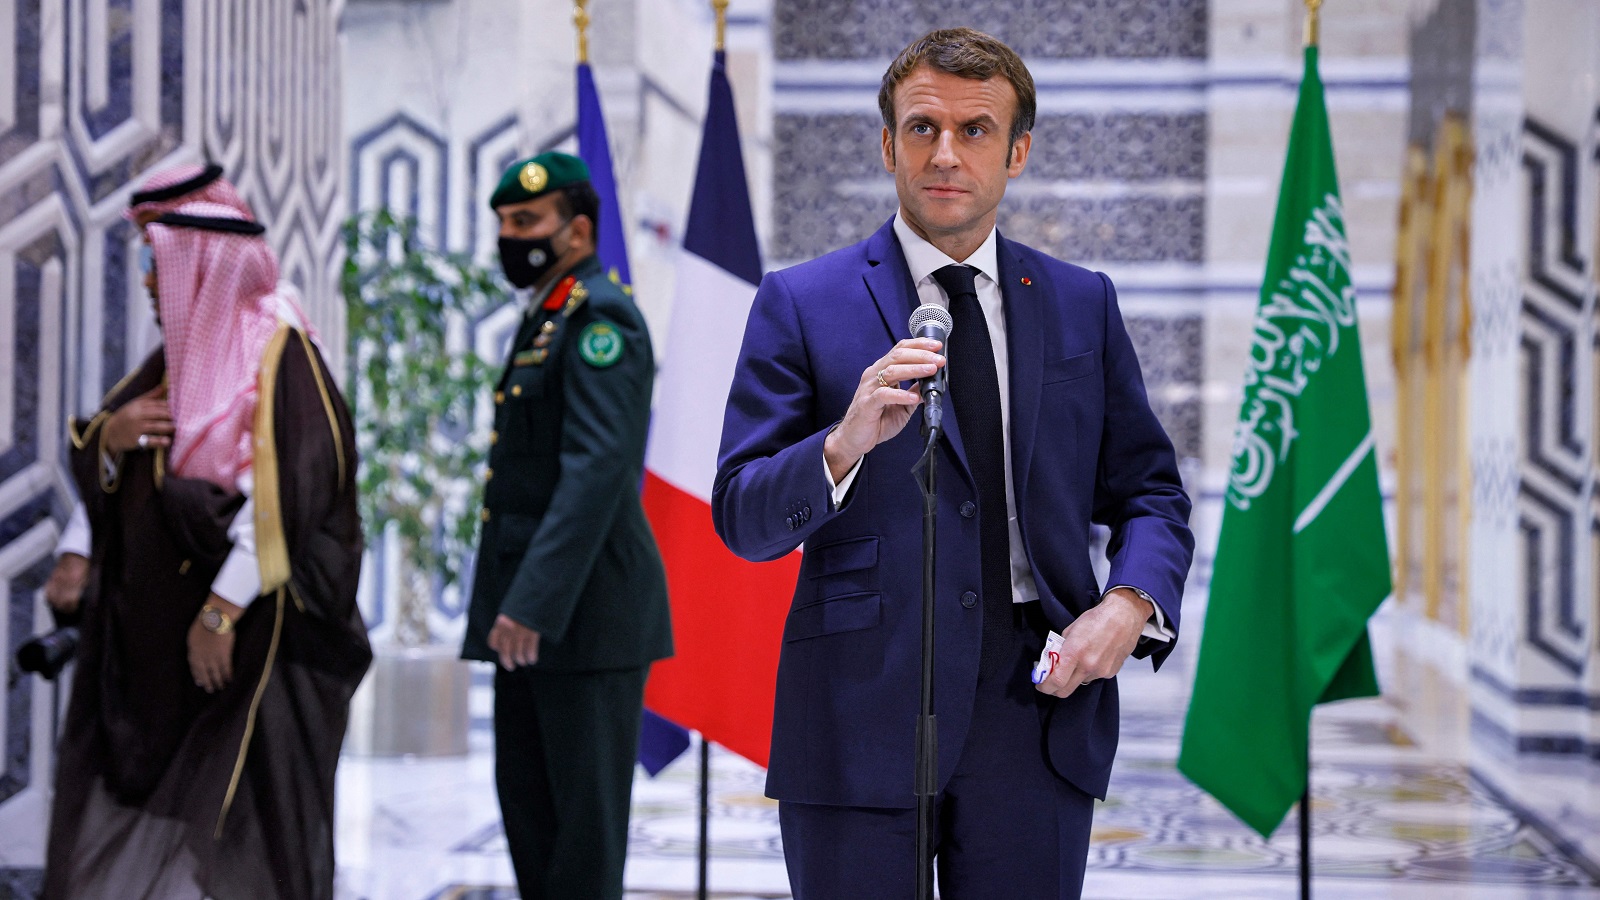 "التوازن" في الموقف الفرنسي-السعودي: الأولوية لاستقرار لبنان